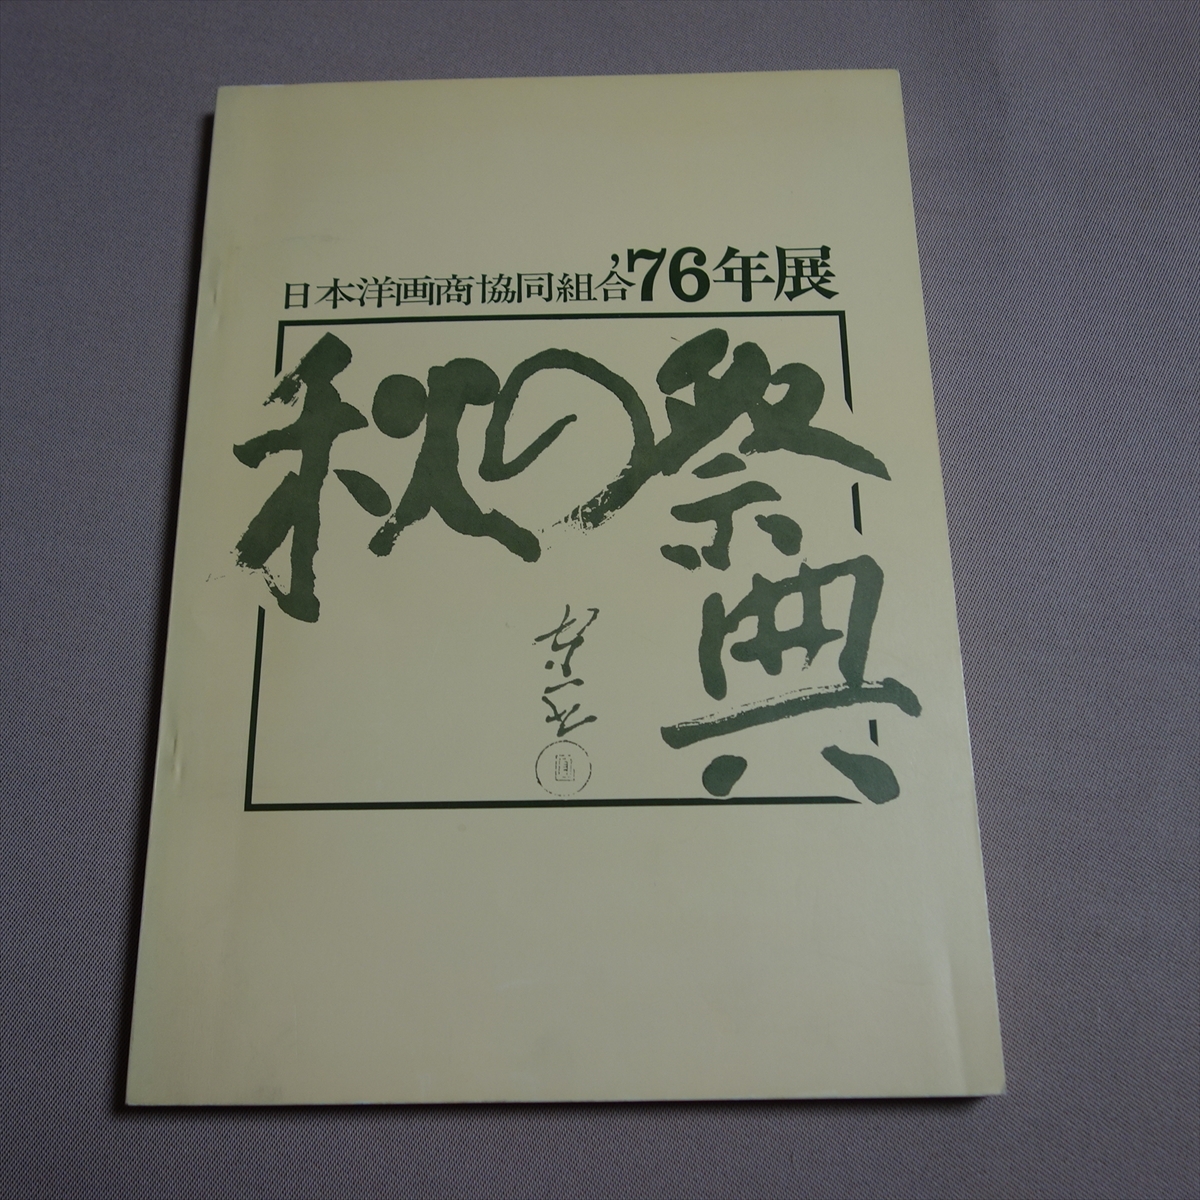 जापान वेस्टर्न आर्ट डीलर्स एसोसिएशन '76 प्रदर्शनी शरद महोत्सव / कैटलॉग शोवा, चित्रकारी, कला पुस्तक, संग्रह, सूची